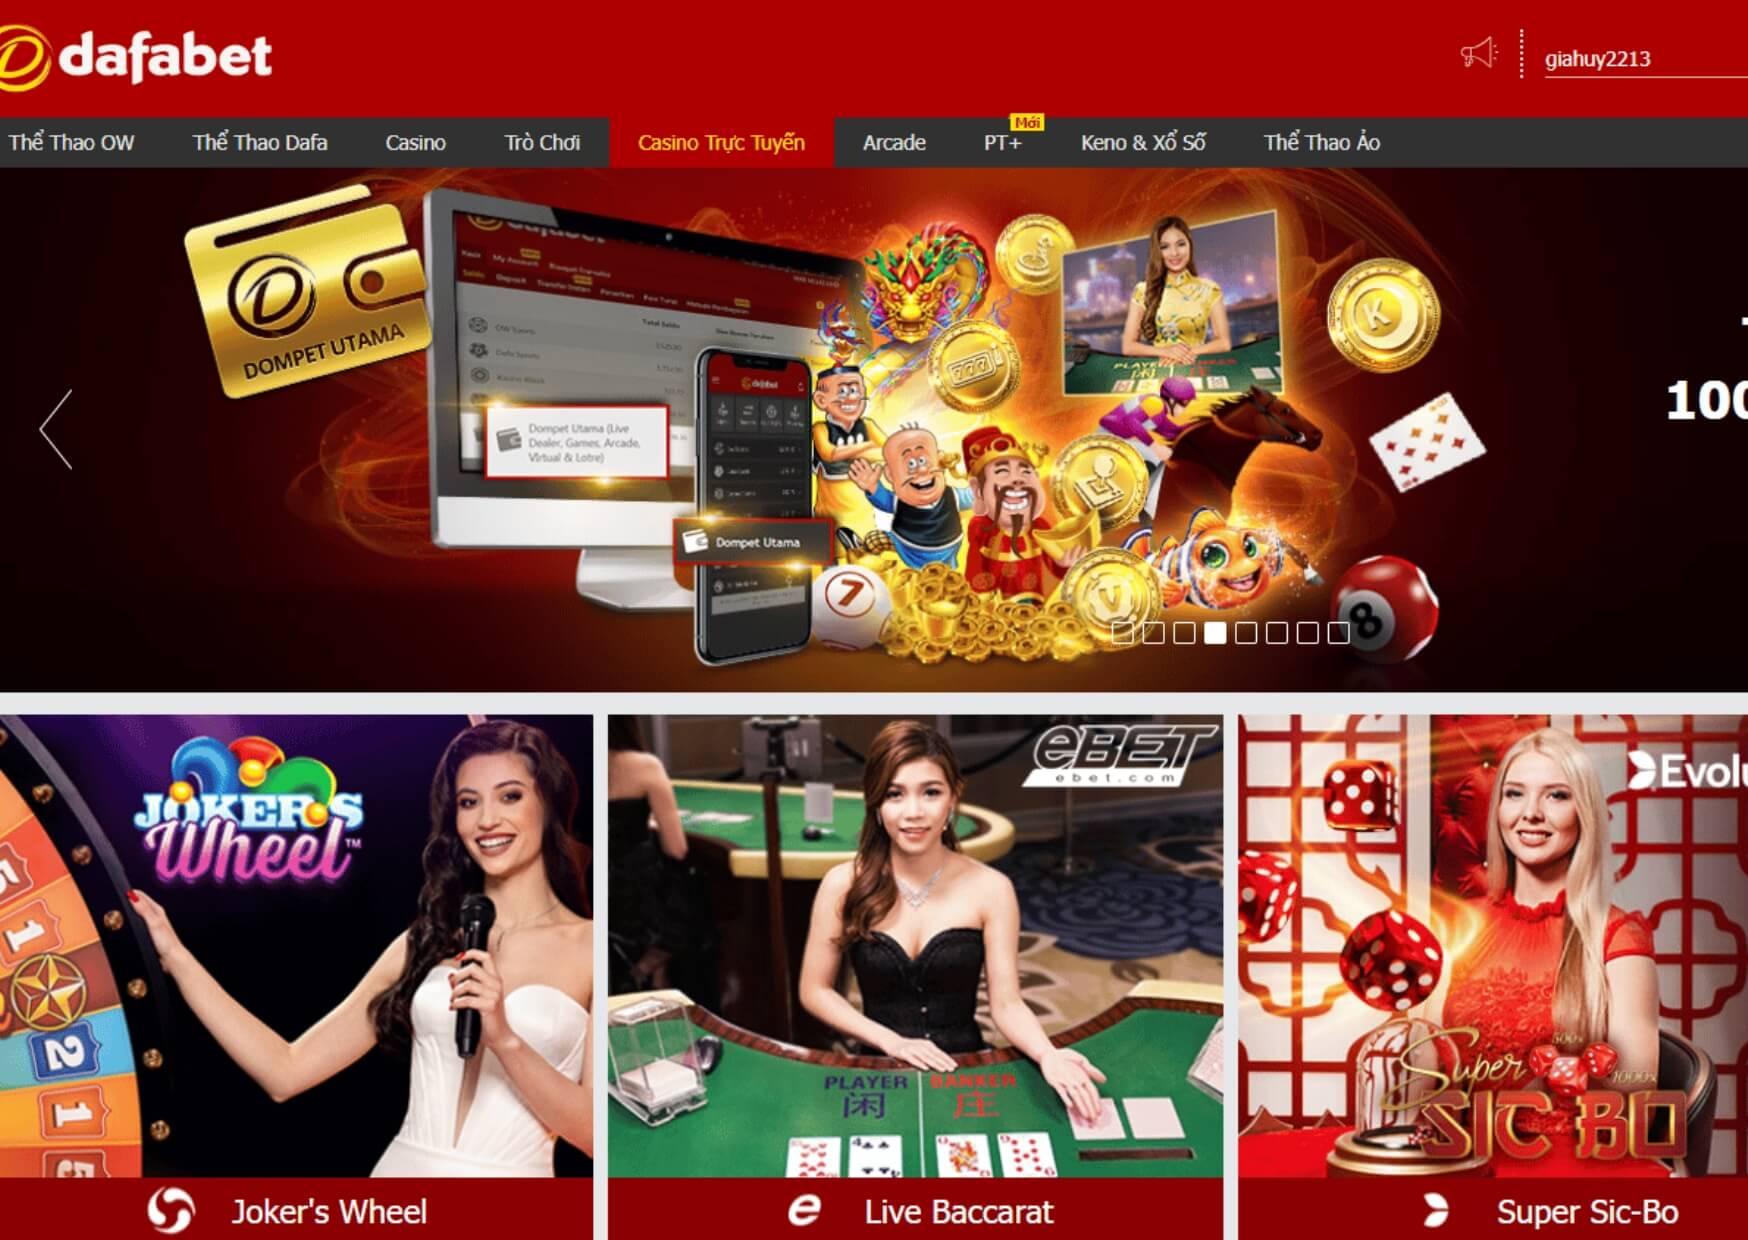 Website nhà cái Dafabet thiết kế hiện đại, màu sắc bắt mắt thu hút người chơi